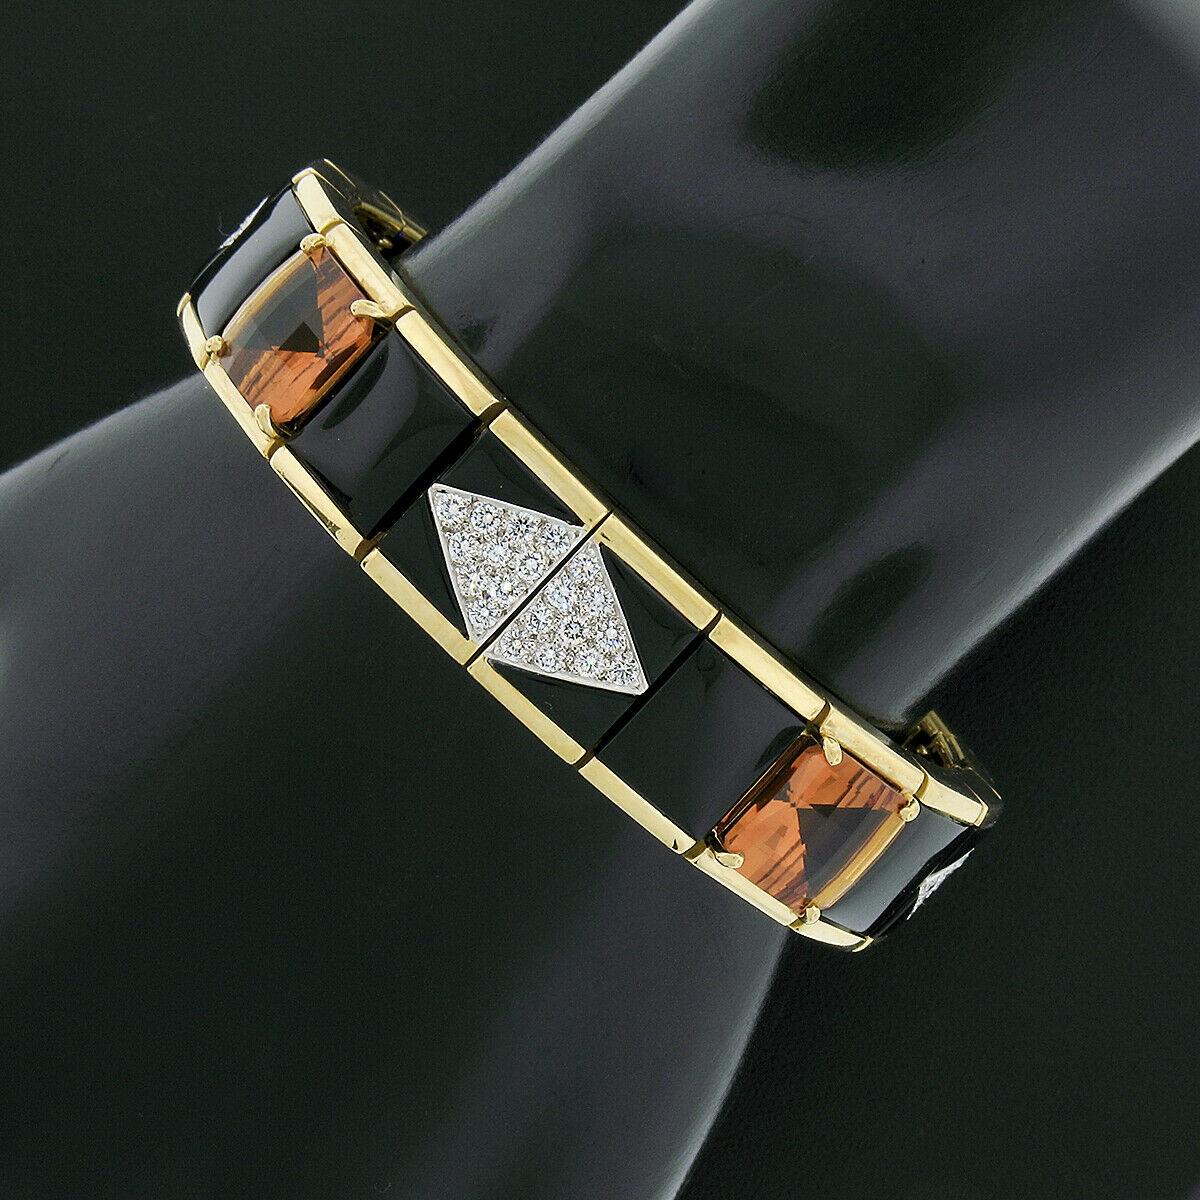 Dieses wunderschöne Armband wurde von Michael Bondanza entworfen und aus massivem 18-karätigem Gelbgold und Platin gefertigt. Es verfügt über breite rechteckige Glieder mit einem schönen polierten Oberfläche, in denen ordentlich mit feinen schwarzen